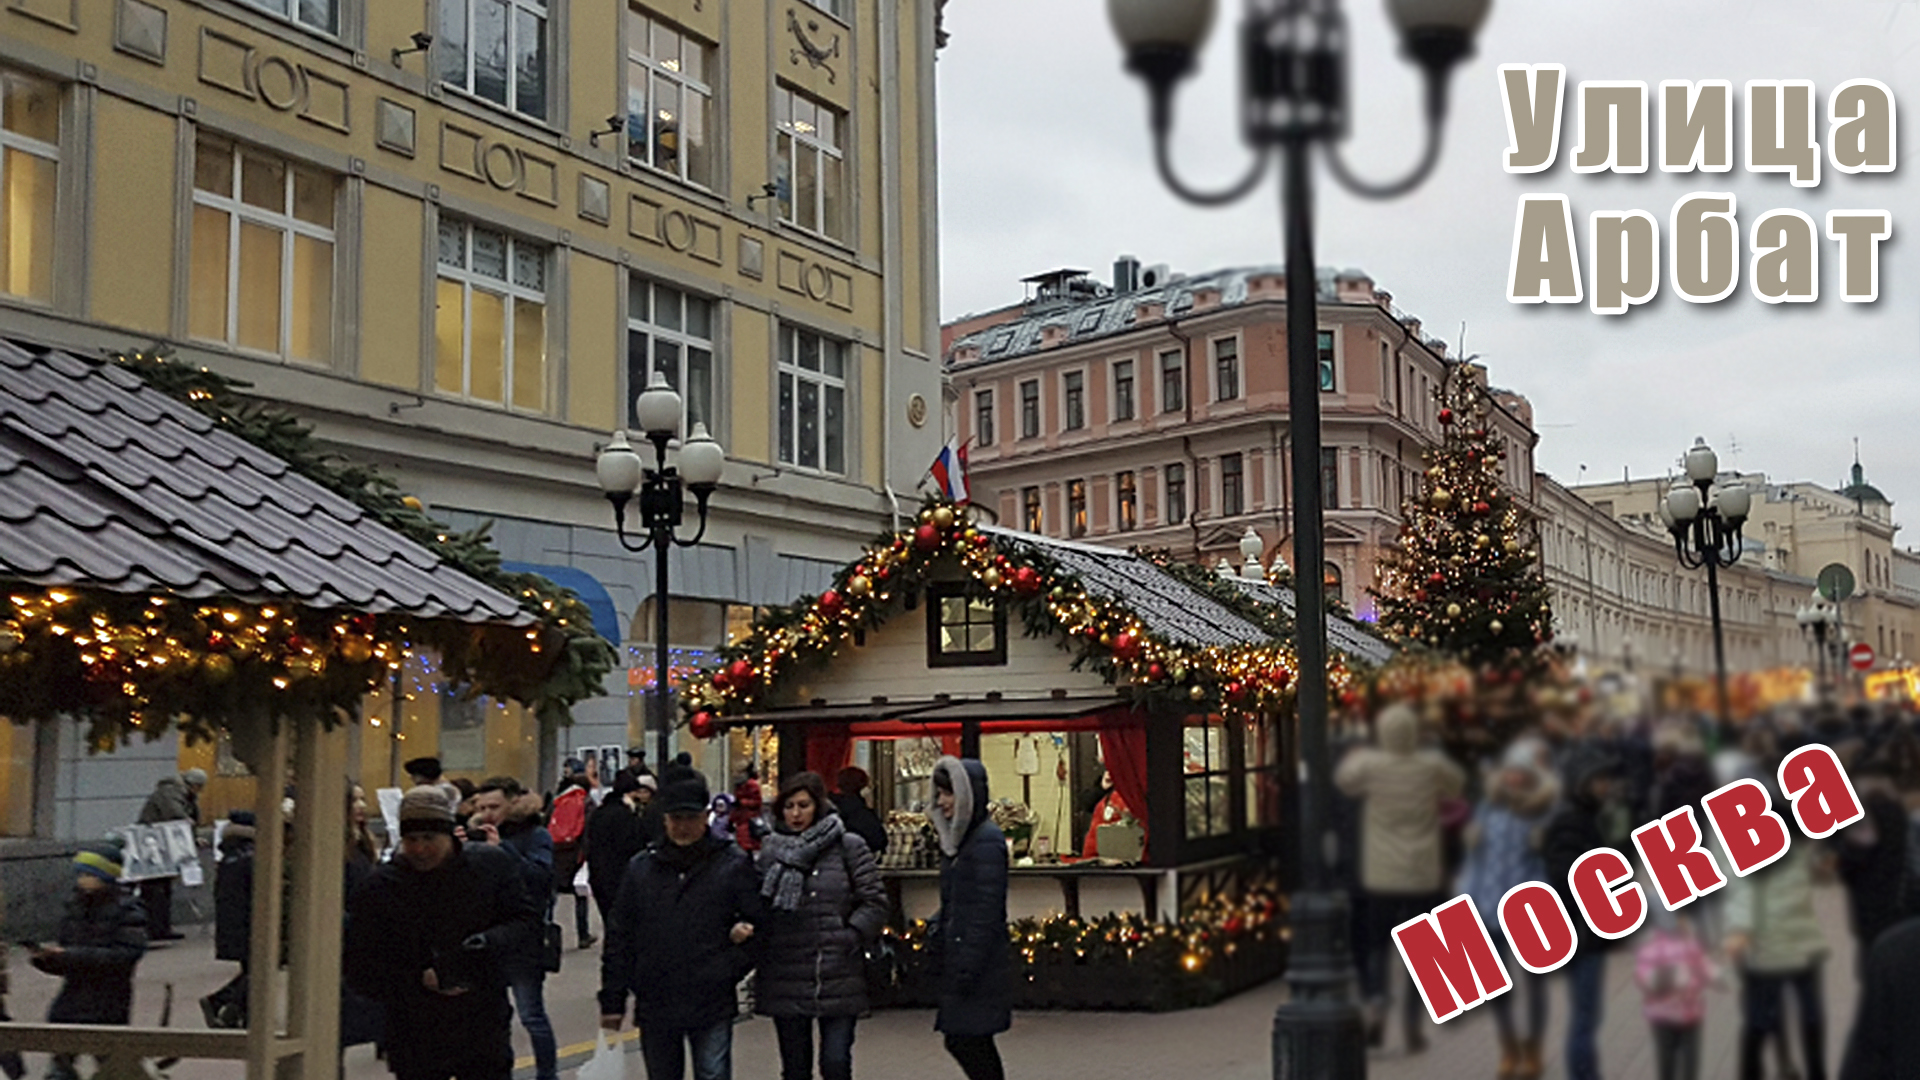 Так выглядит улица Арбат в Москве зимой.